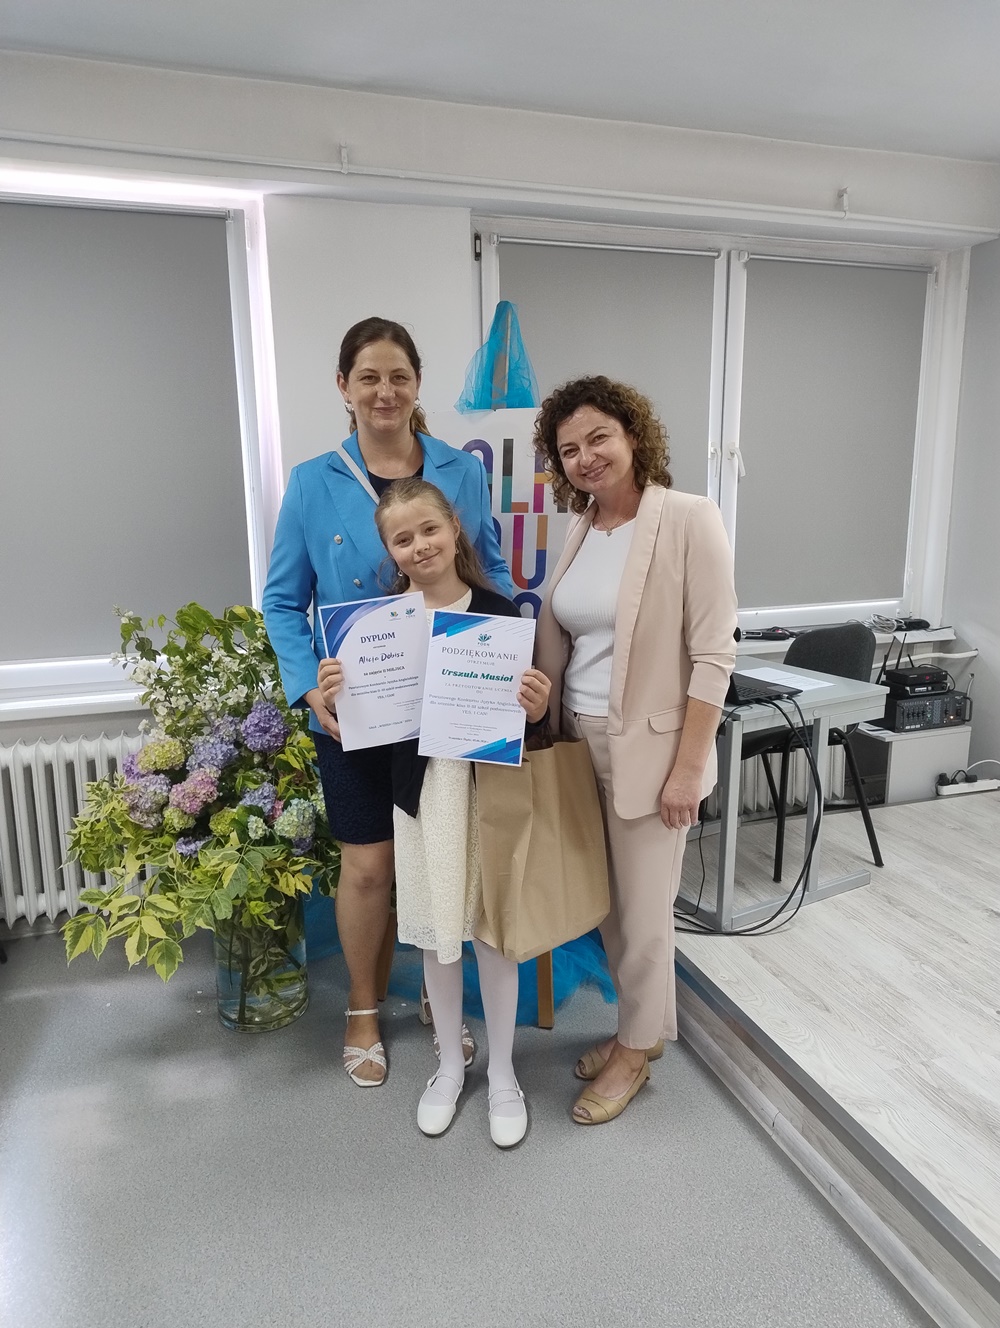 Alicja nagrodzona uczennica, z mamą oraz panią dyrektor szkoły